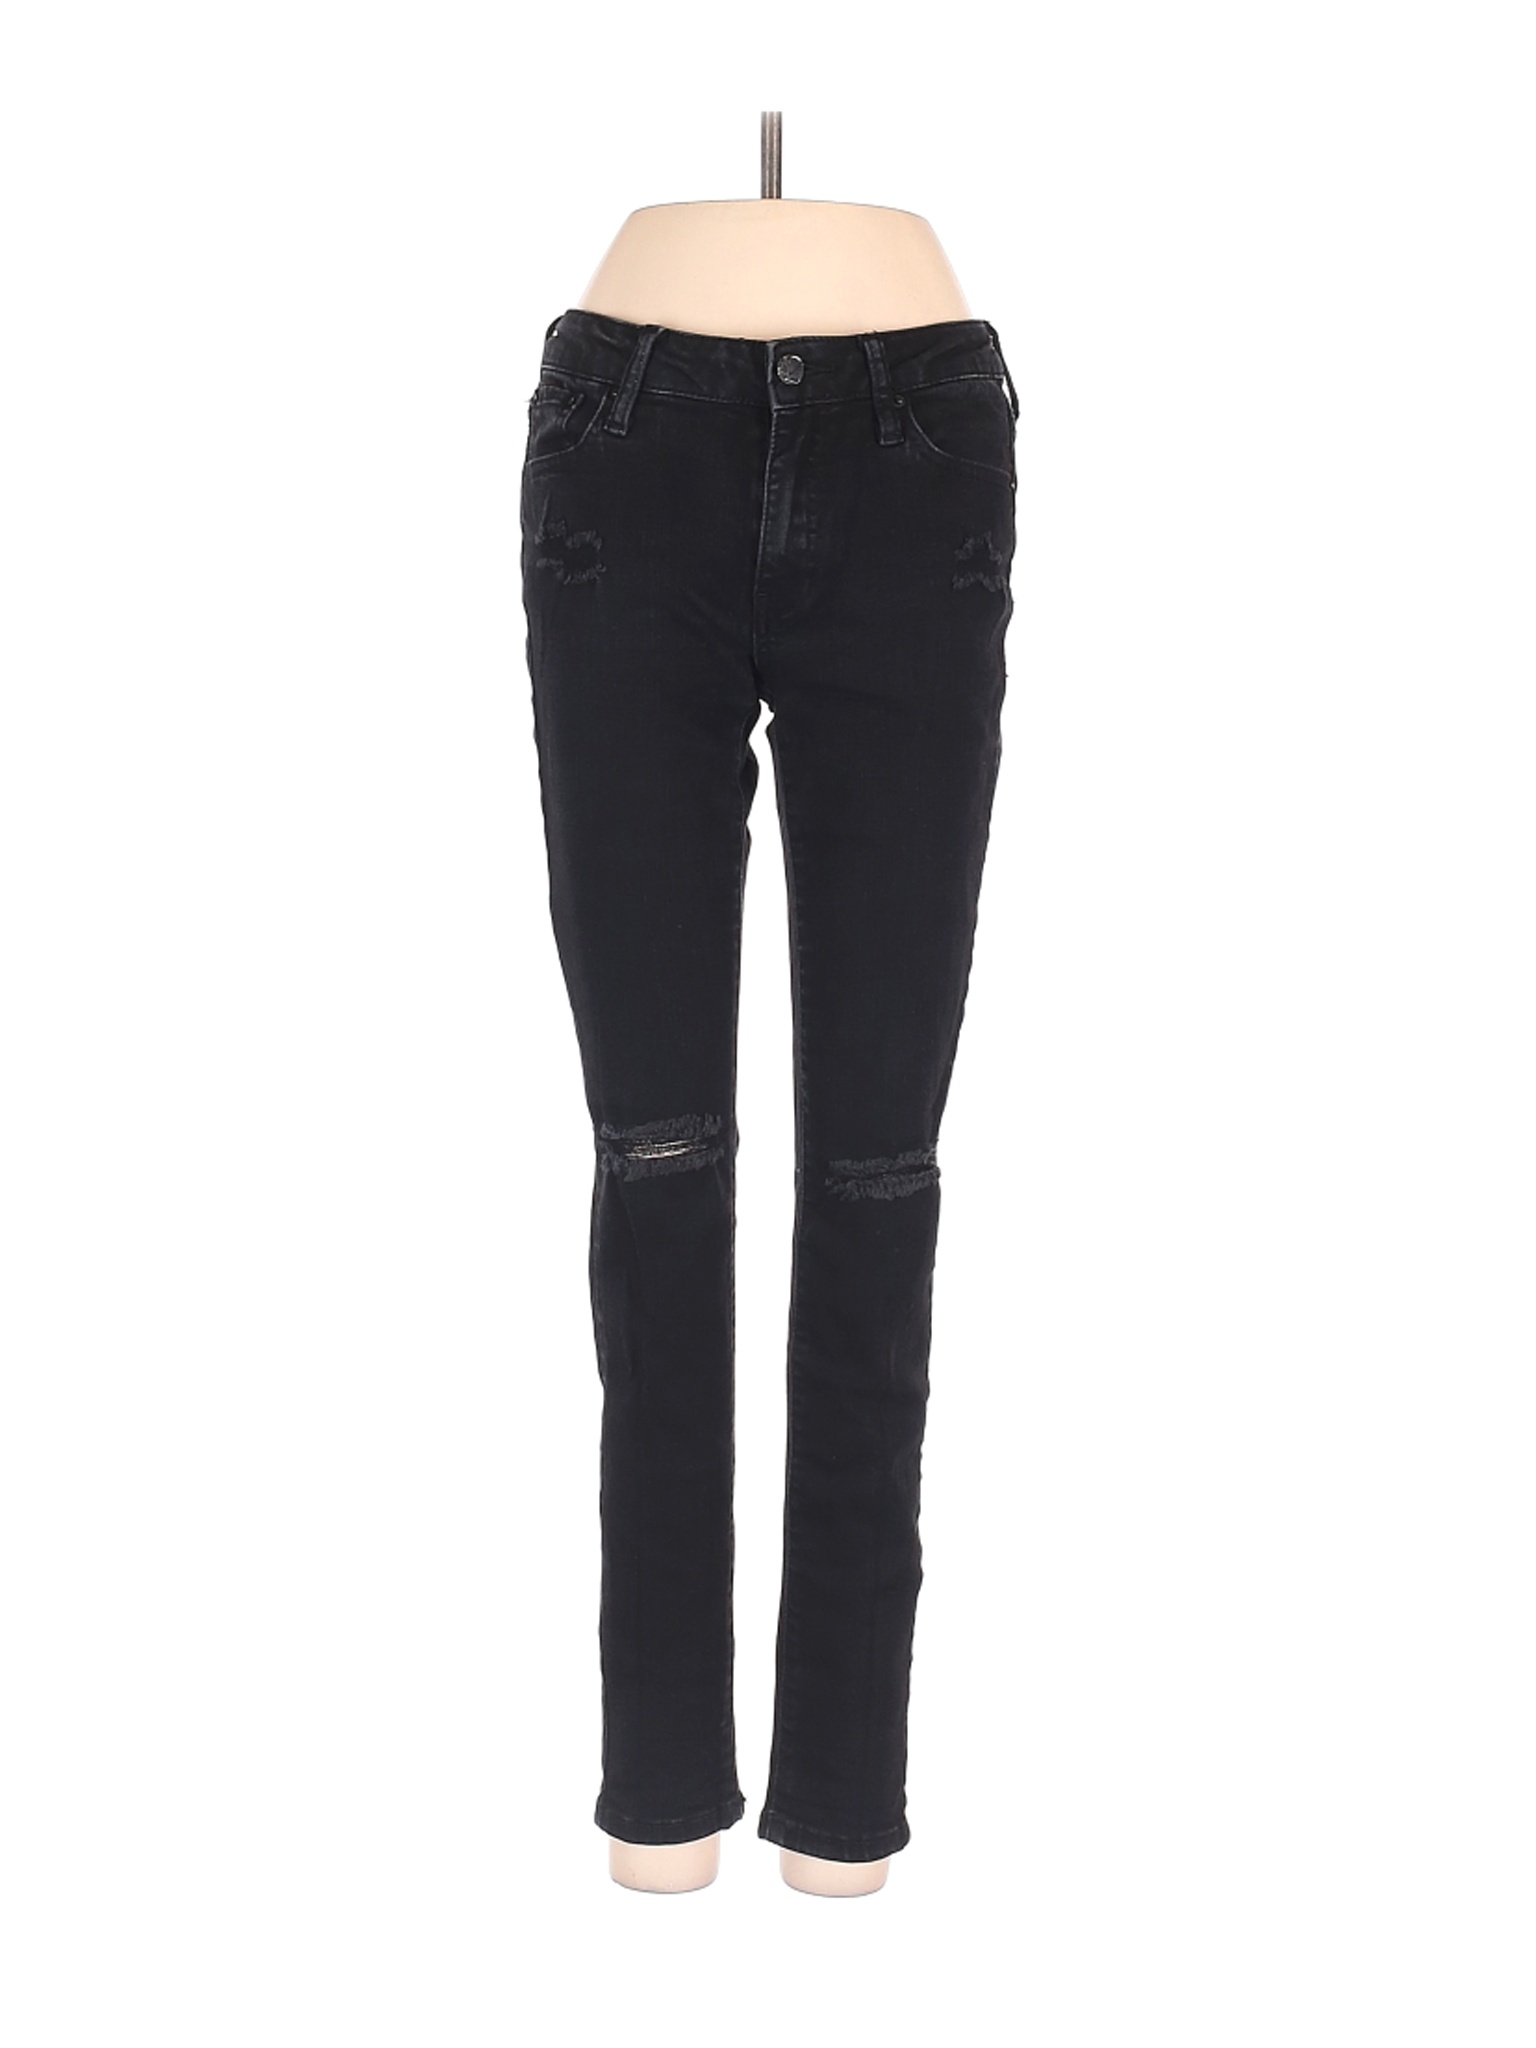 A2 Jeans Women Black Jeans 3 | eBay